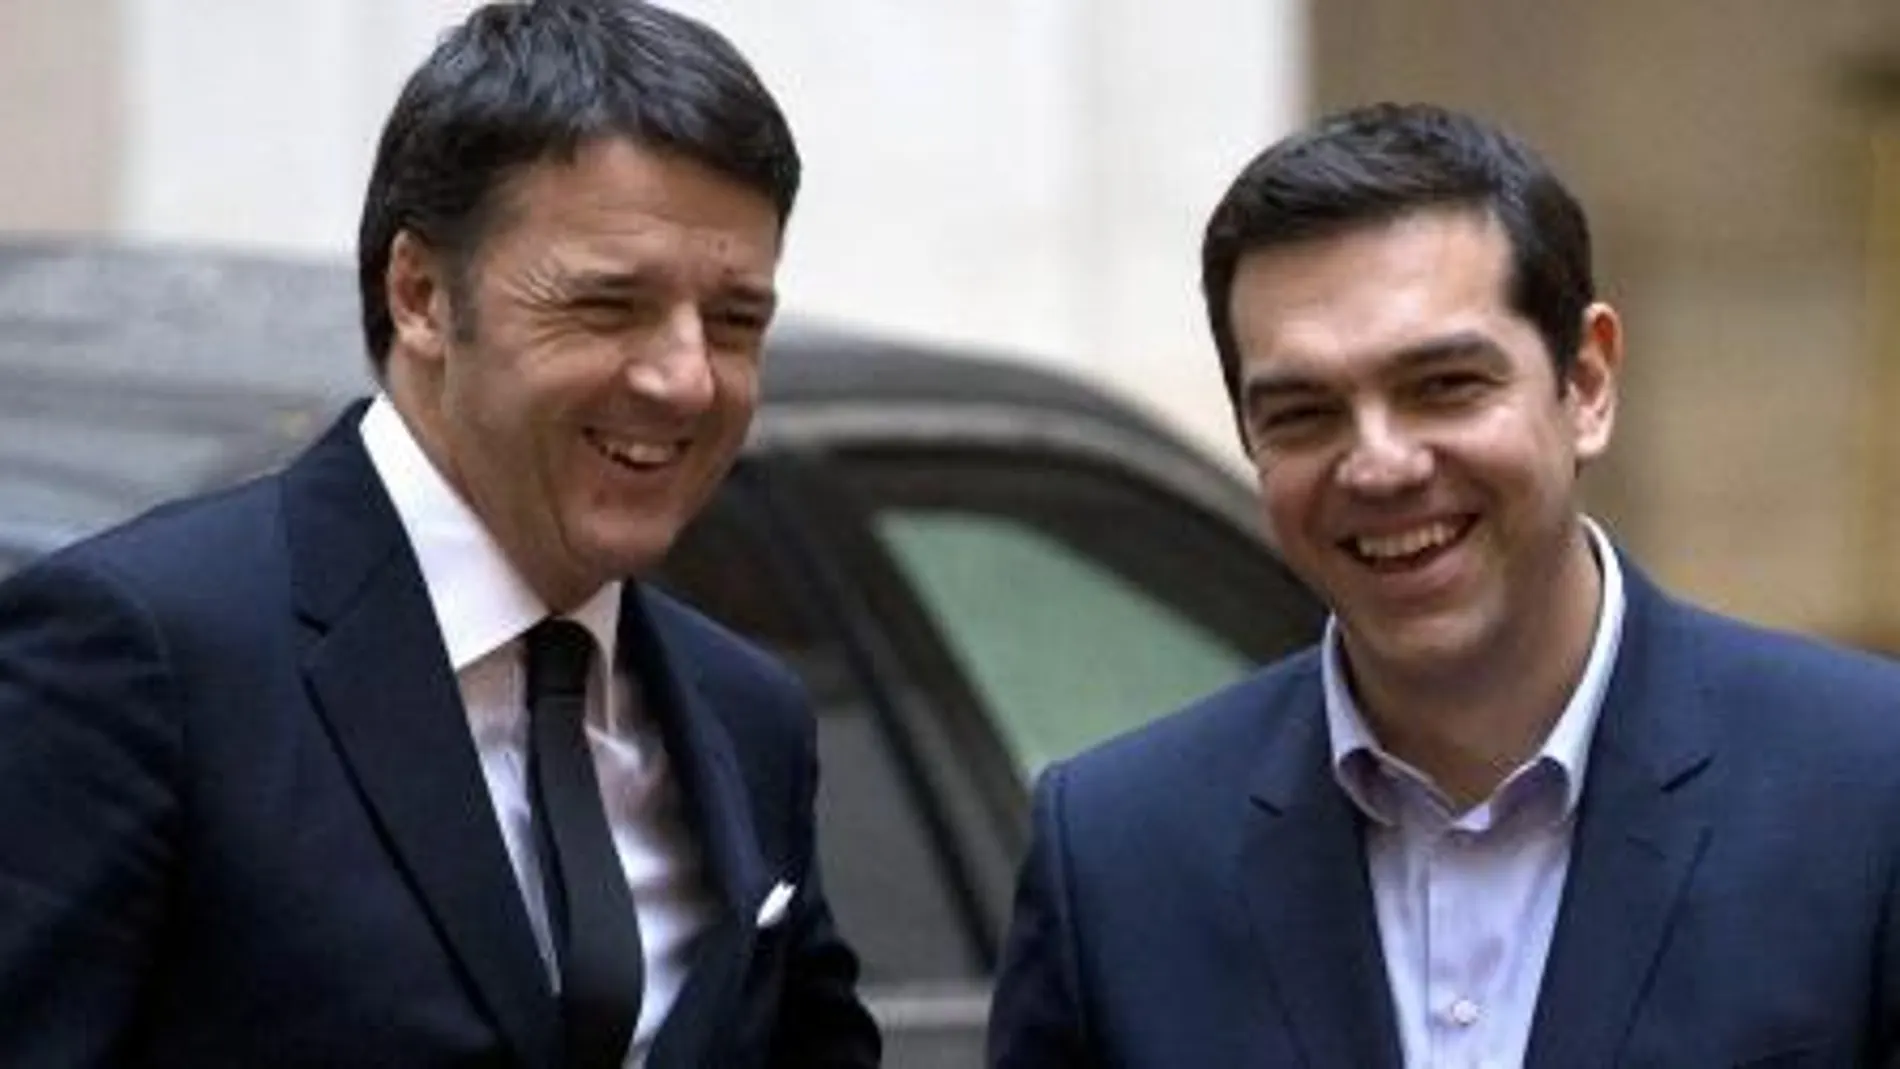 El primer ministro italiano Matteo Renzi y el primer ministro de Grecia, Alexis Tsipras